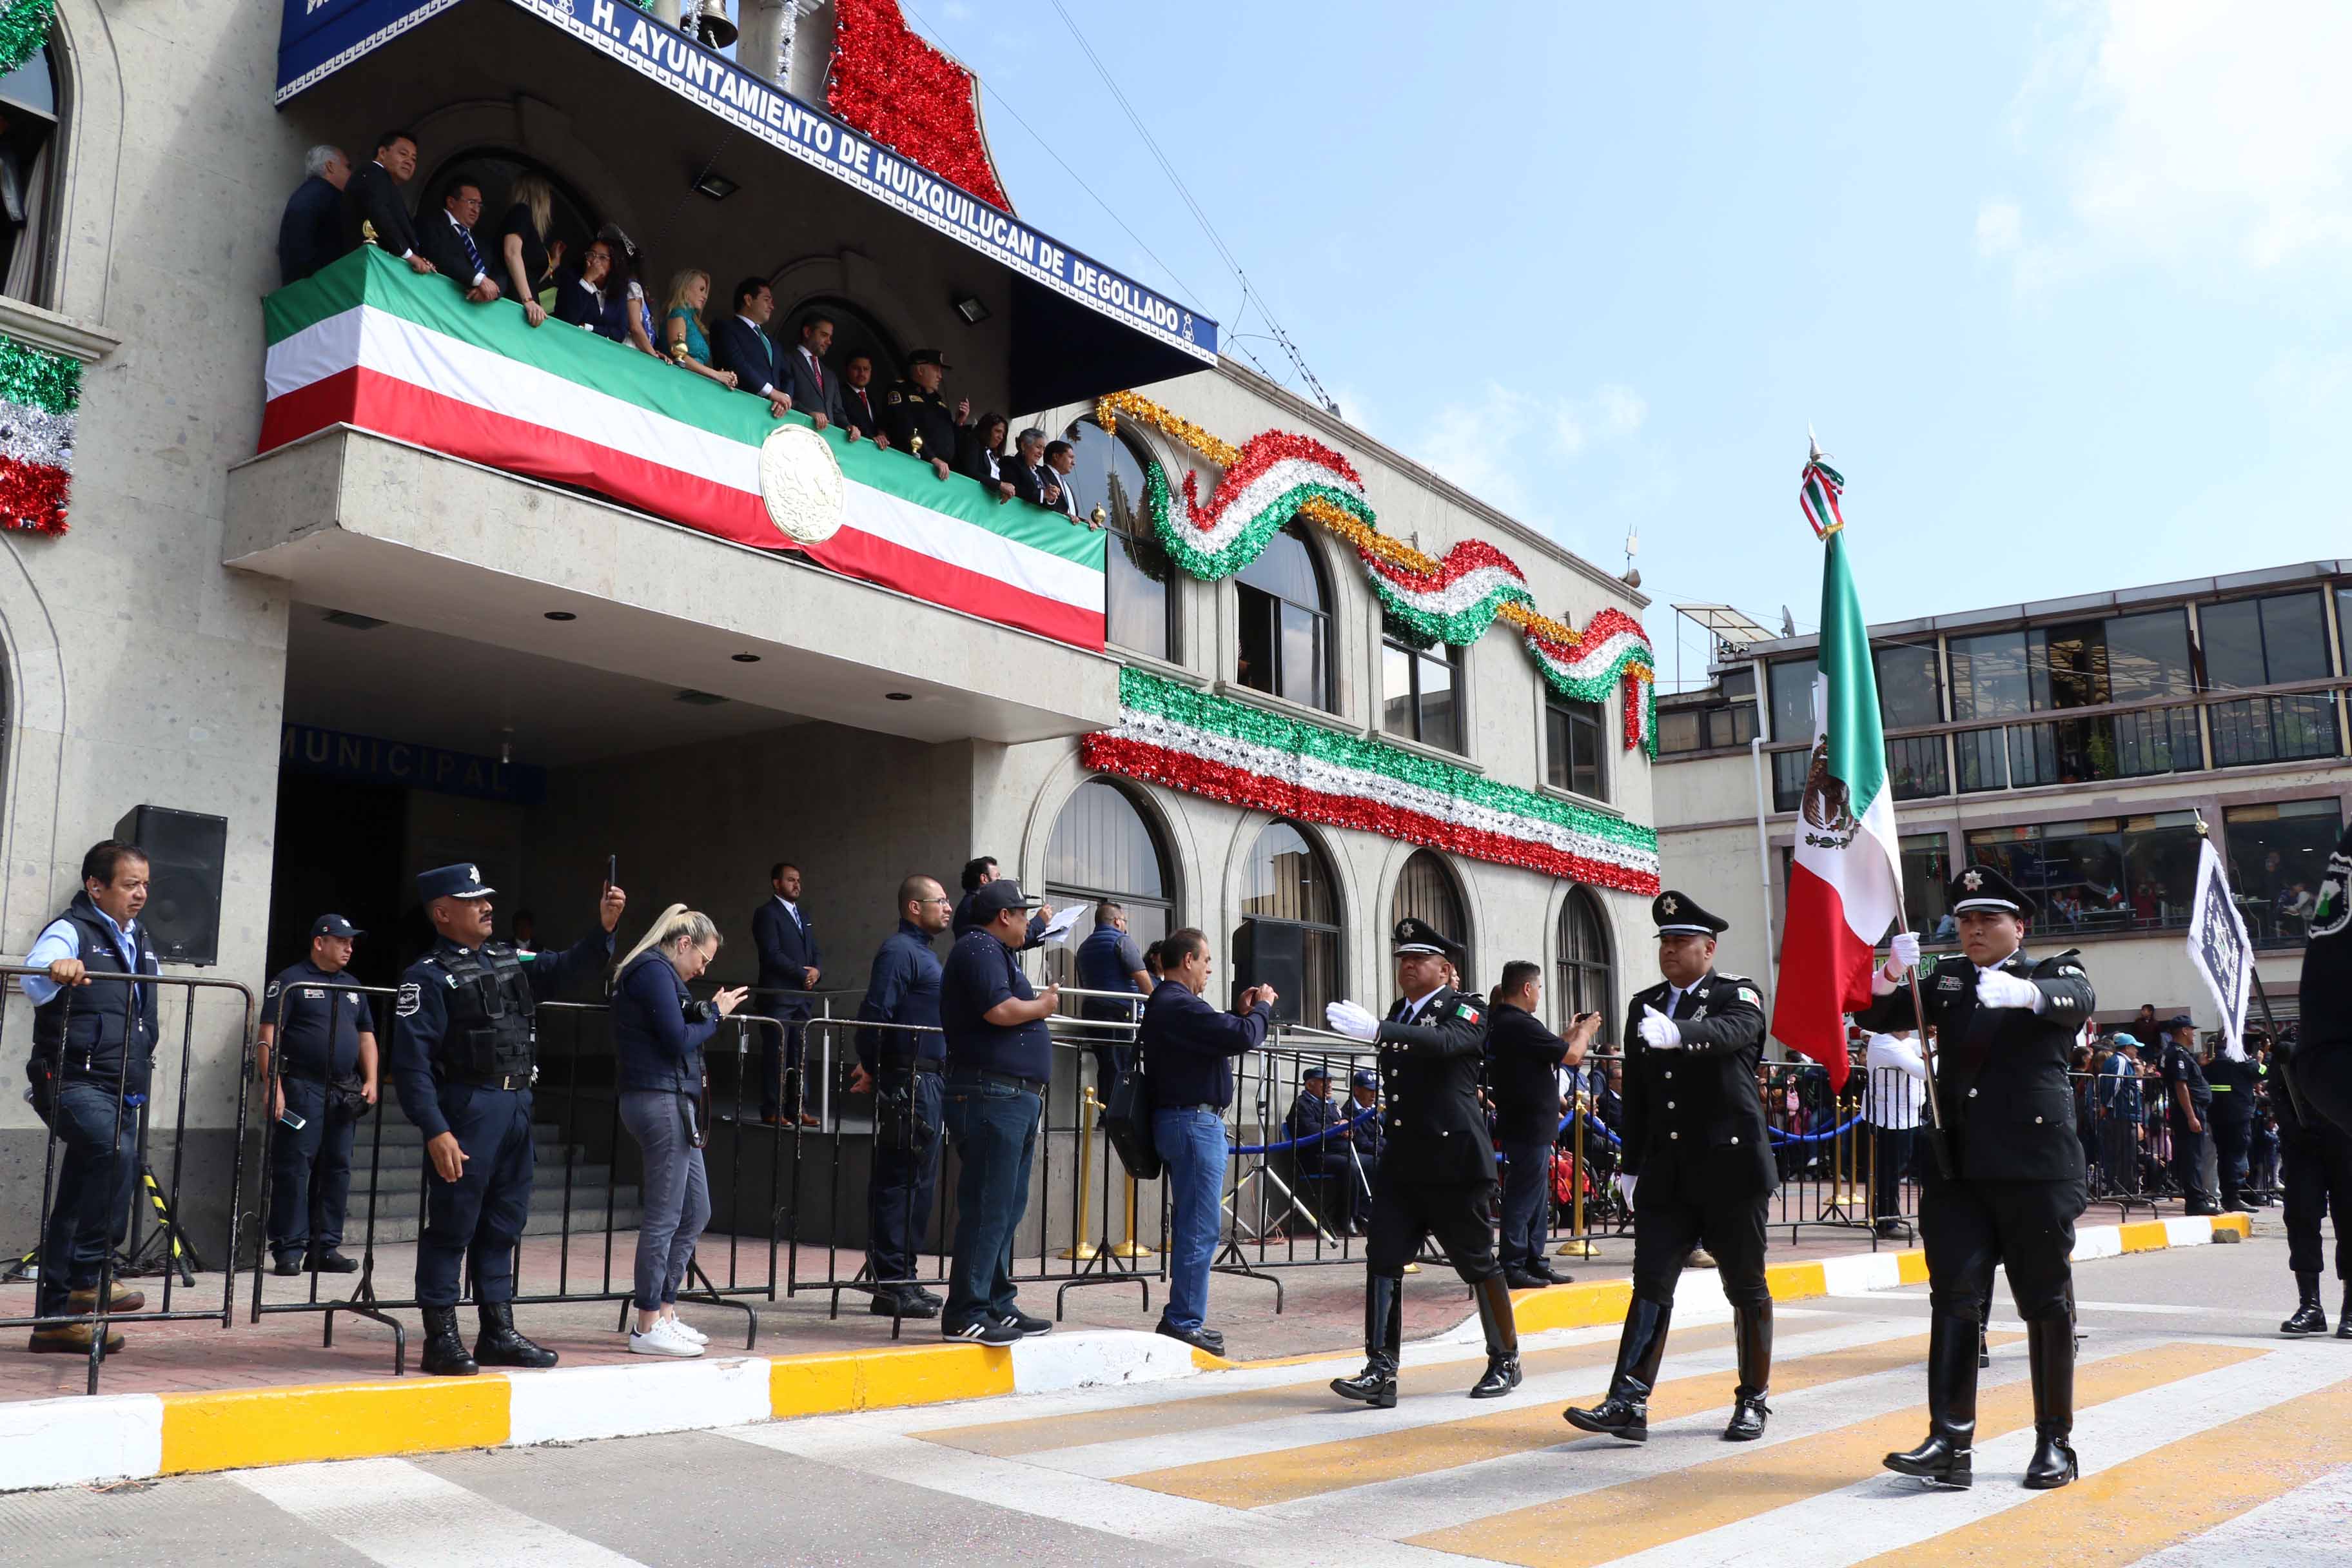 Ni Grito, ni Desfiles en 16 de Septiembre en Huixquilucan